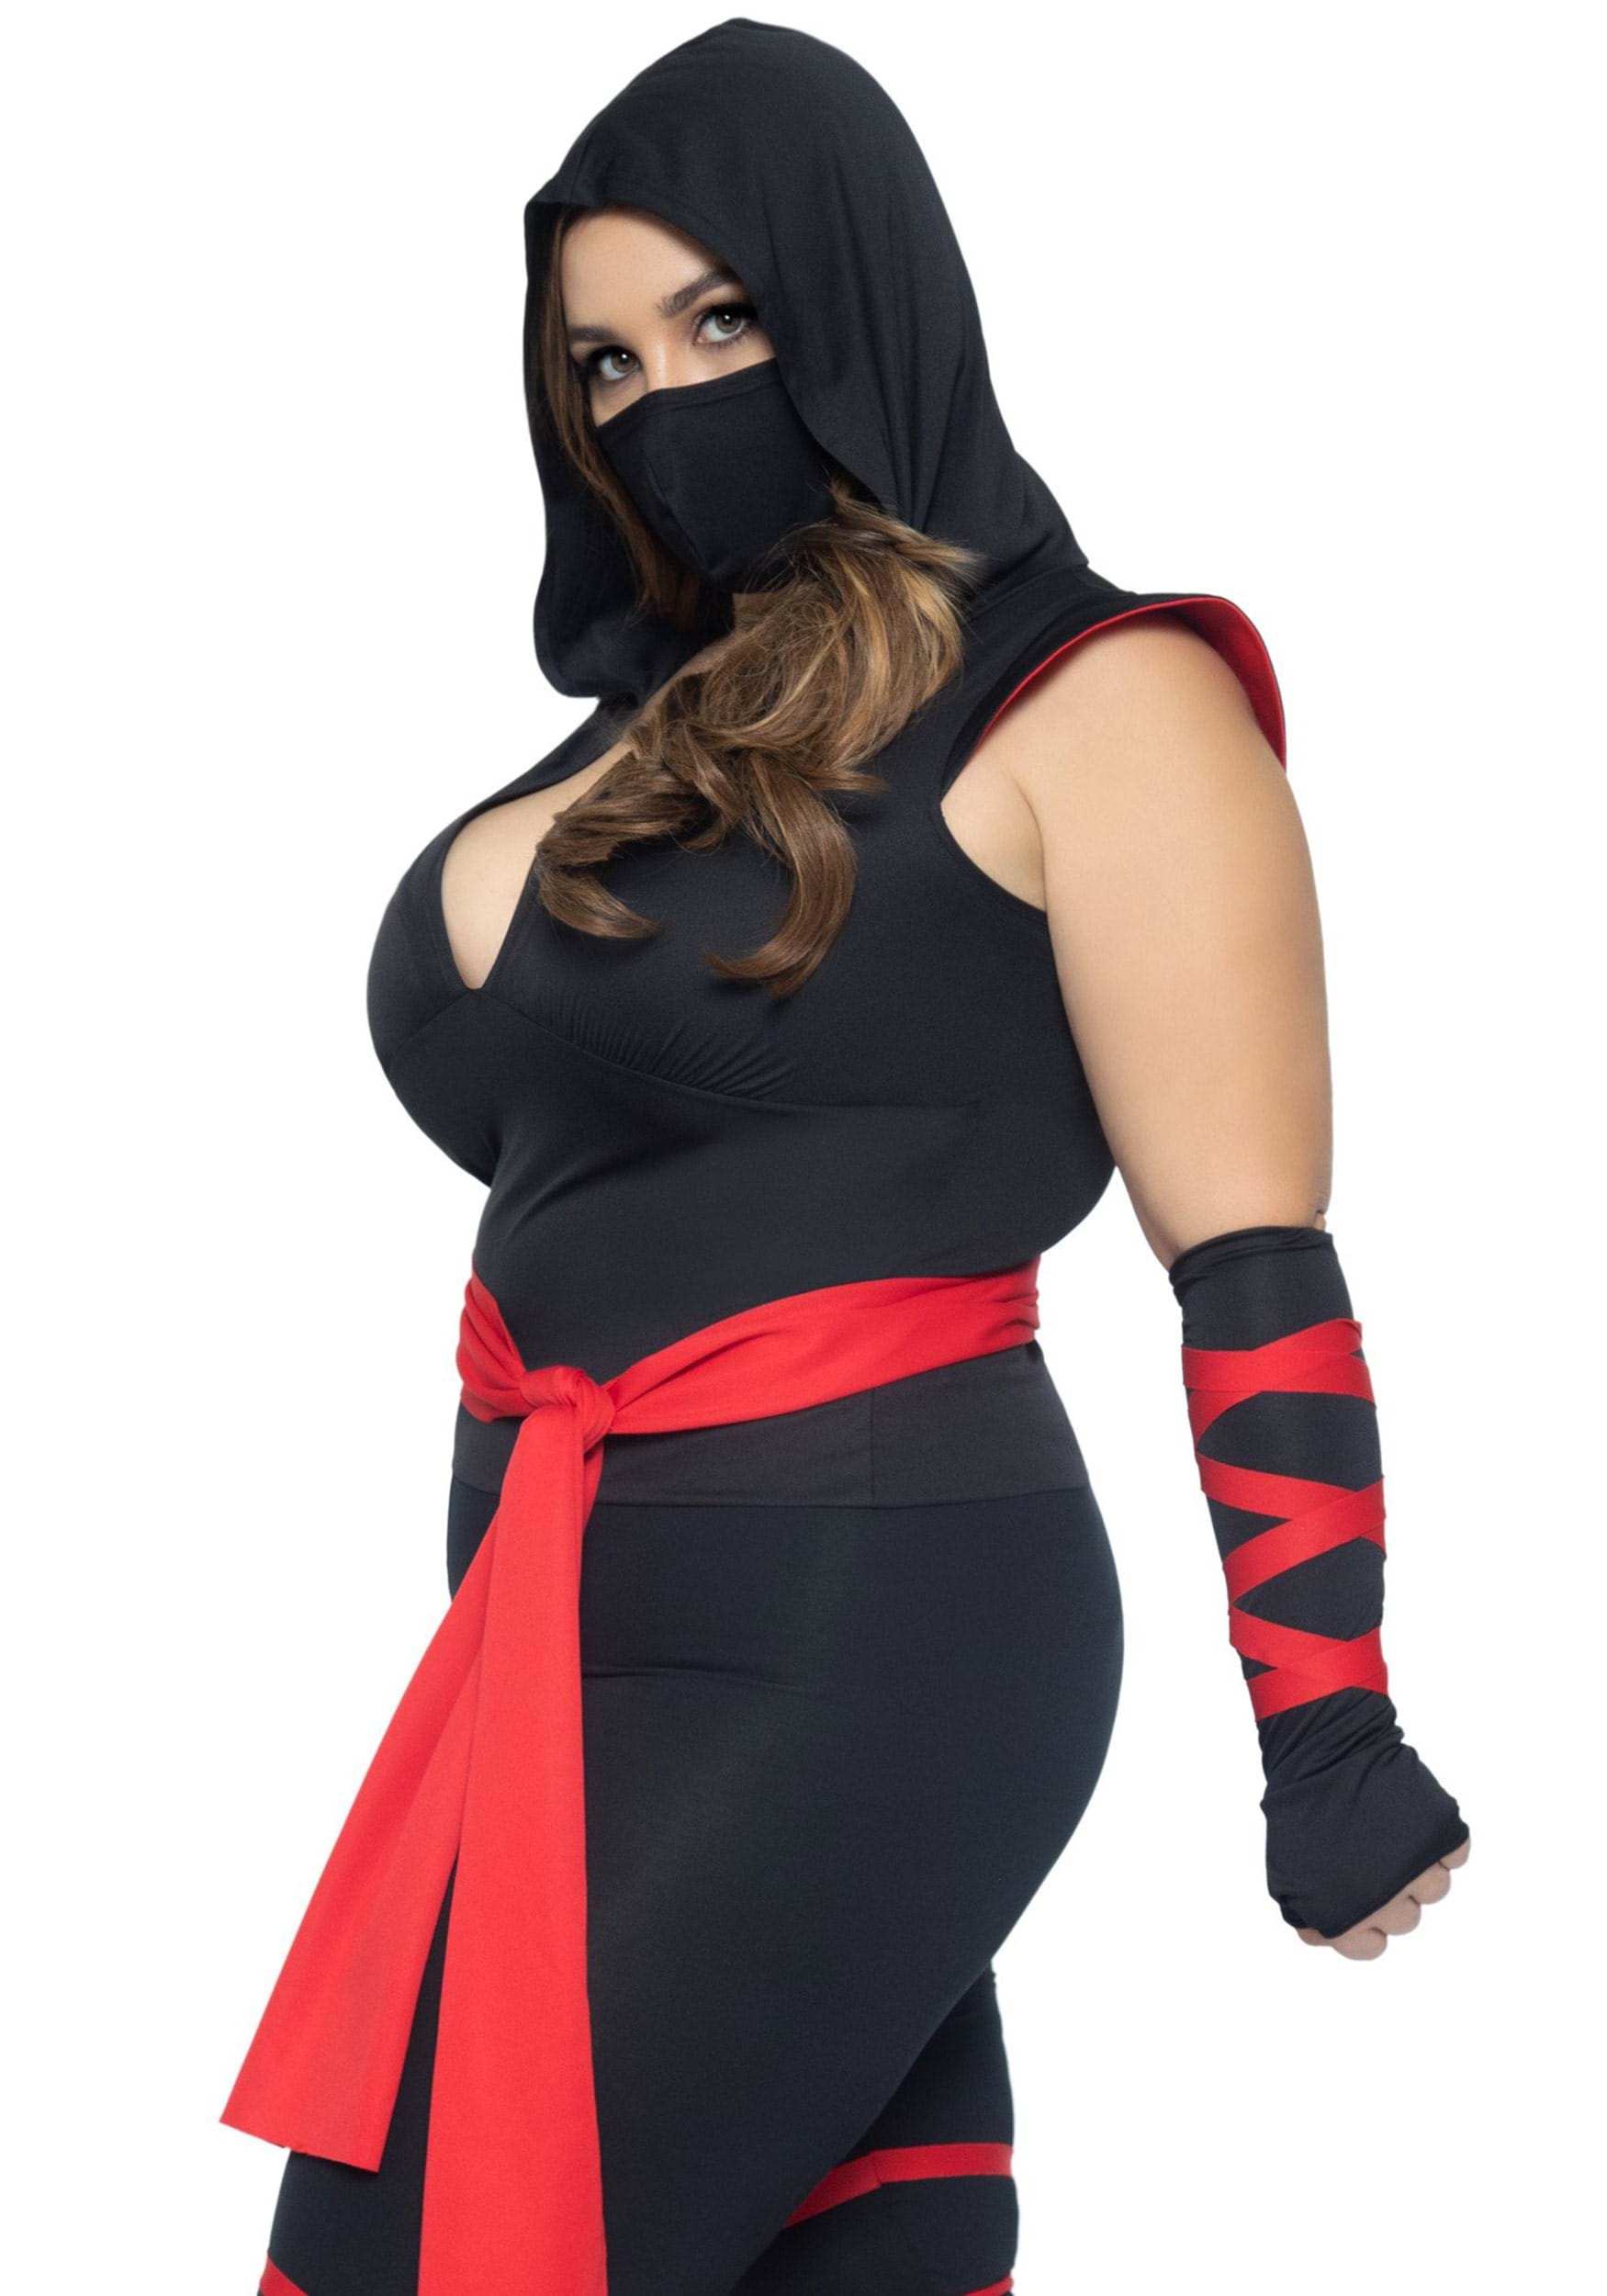 Plus Size Sexy Deadly Ninja Fancy Dress Costume For Women